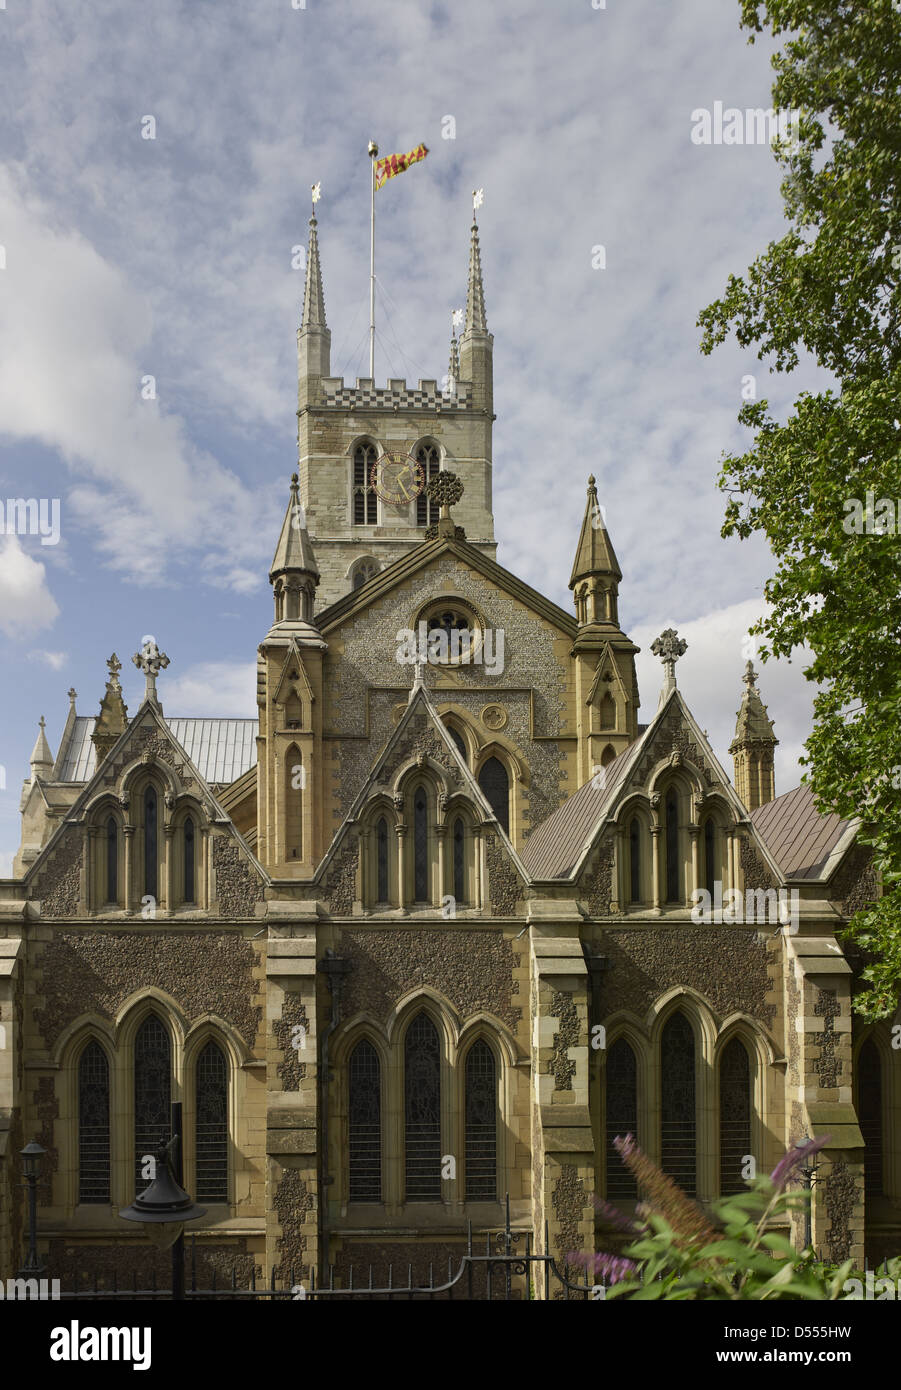 La cathédrale de Southwark east front Banque D'Images